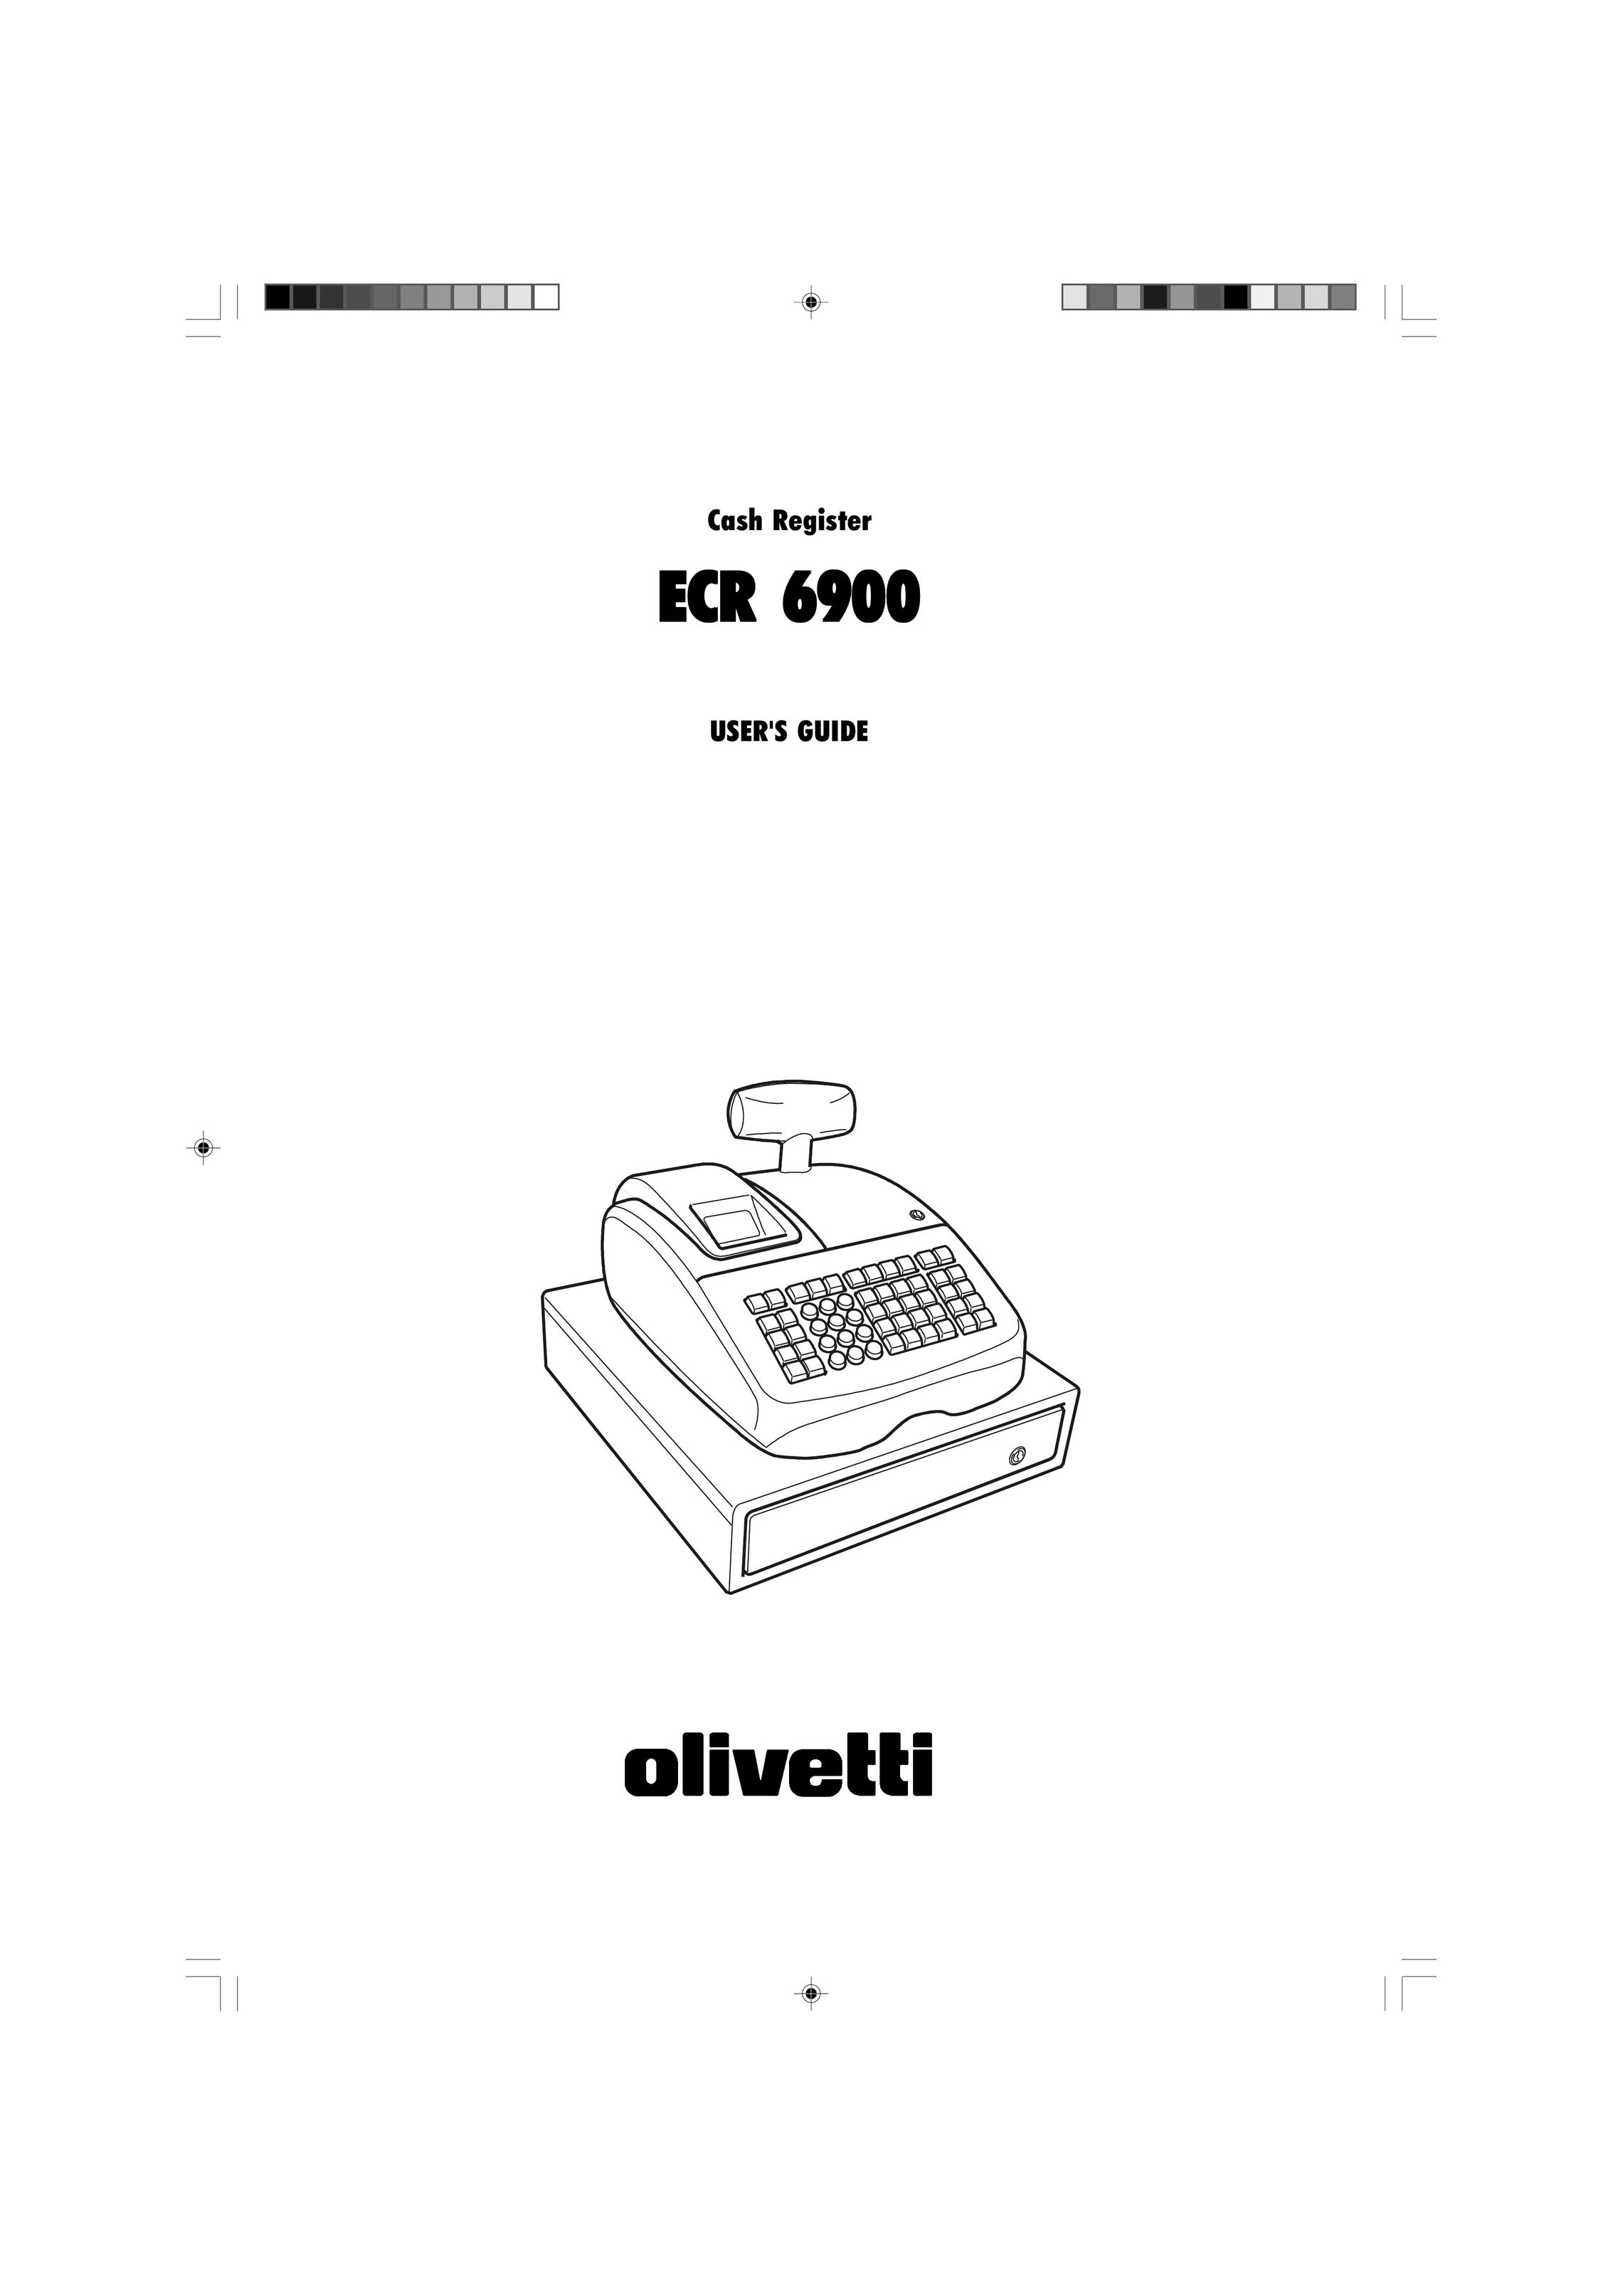 Olivetti ECR 6900 Cash Register User Manual